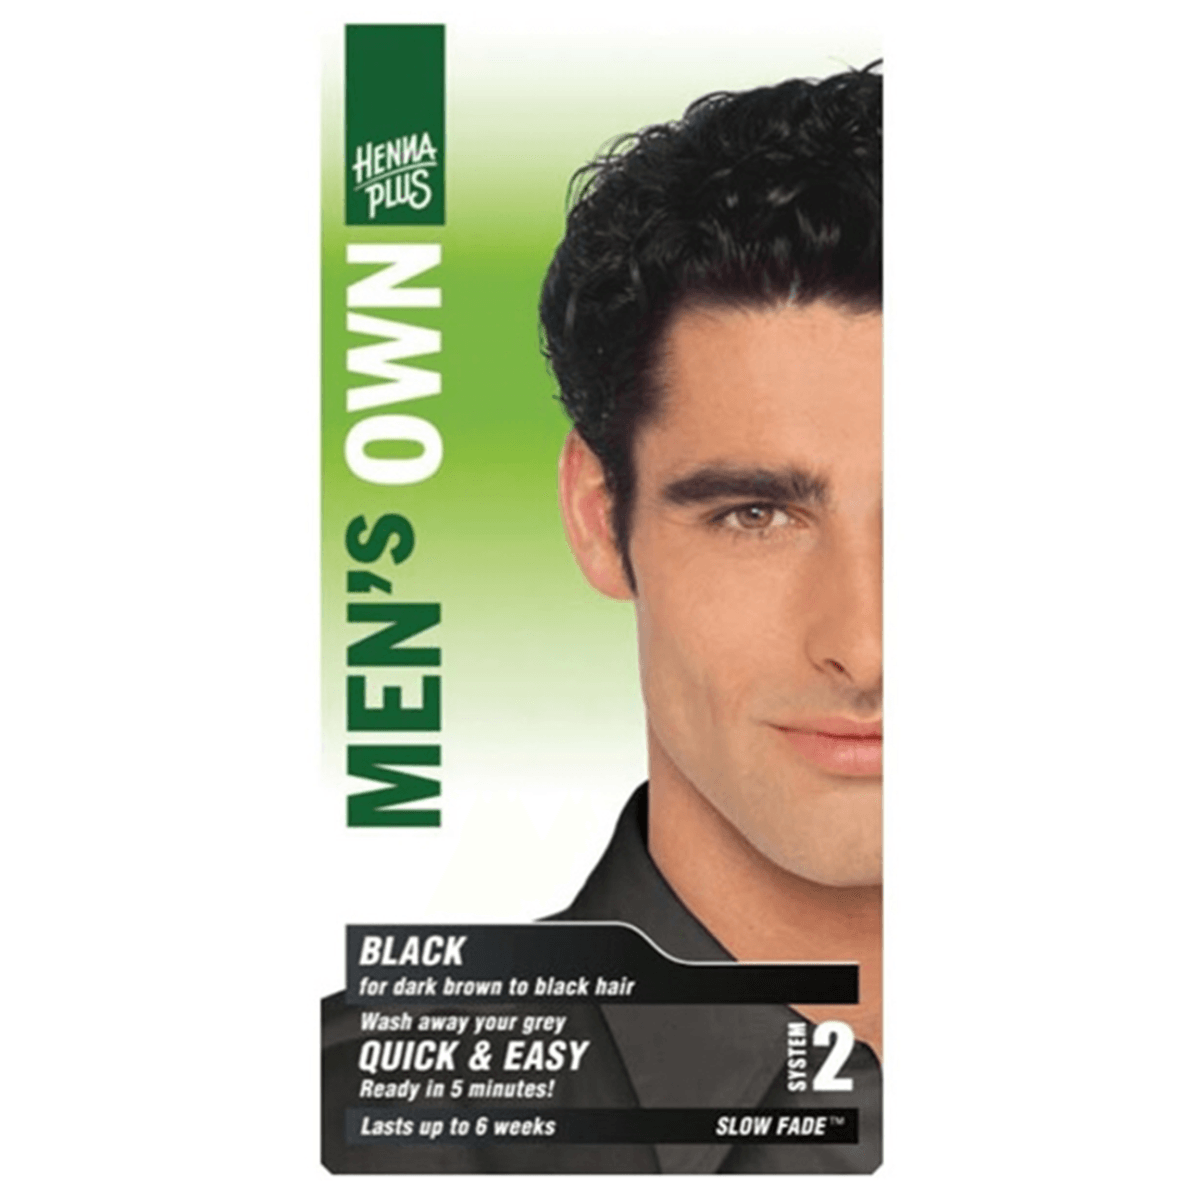 Henna Plus Men's Own Hair Colour Black 80mL Hair Colour at Village Vitamin Store